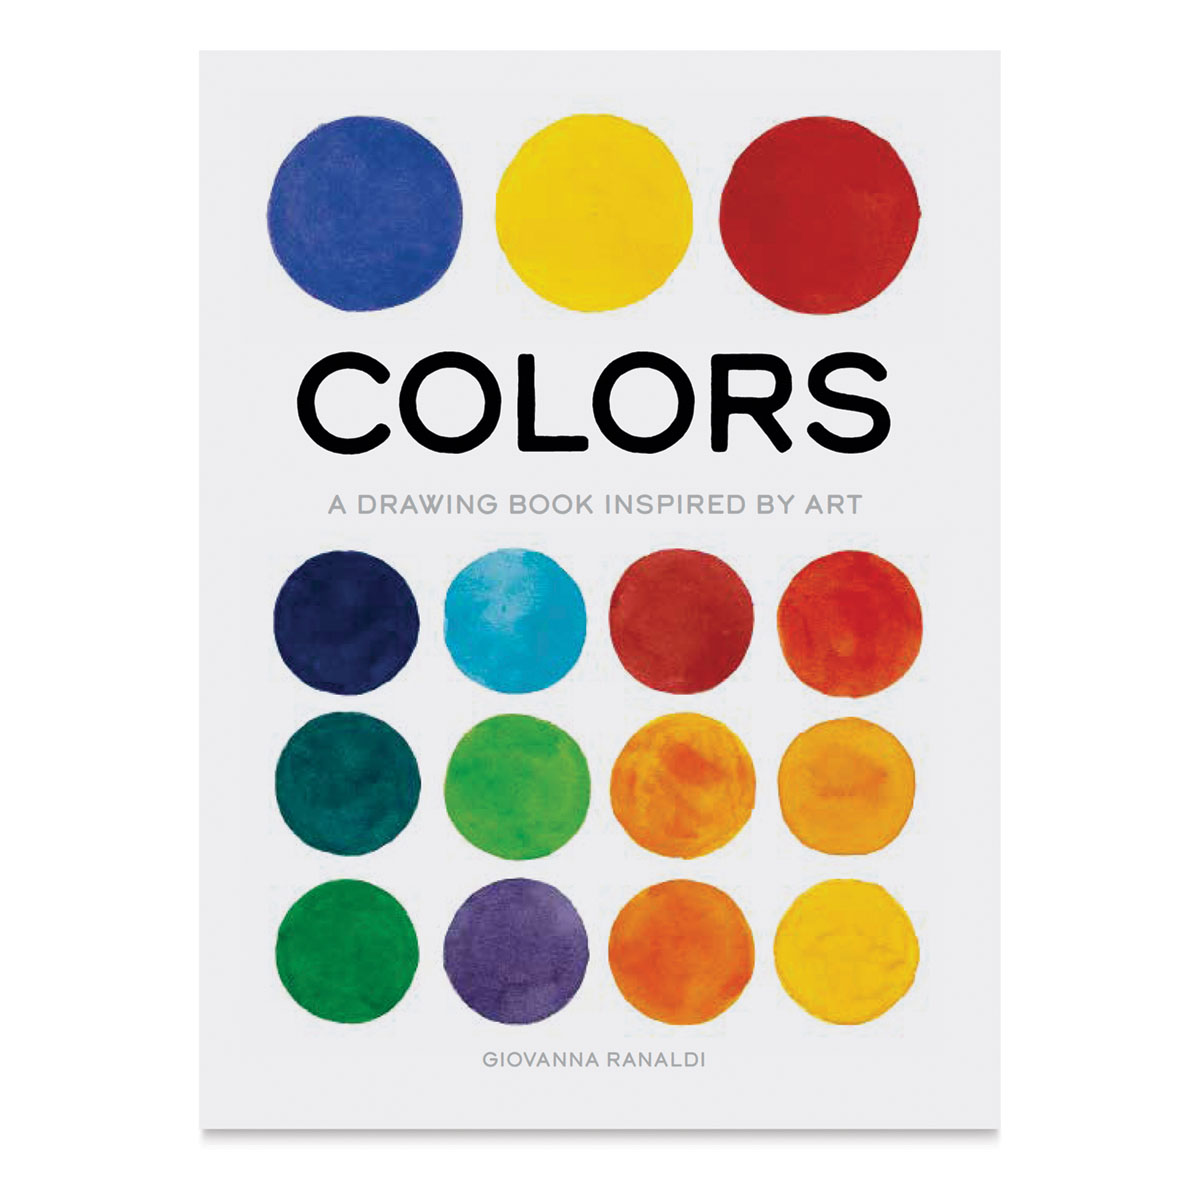 Colors: True Color [Book]